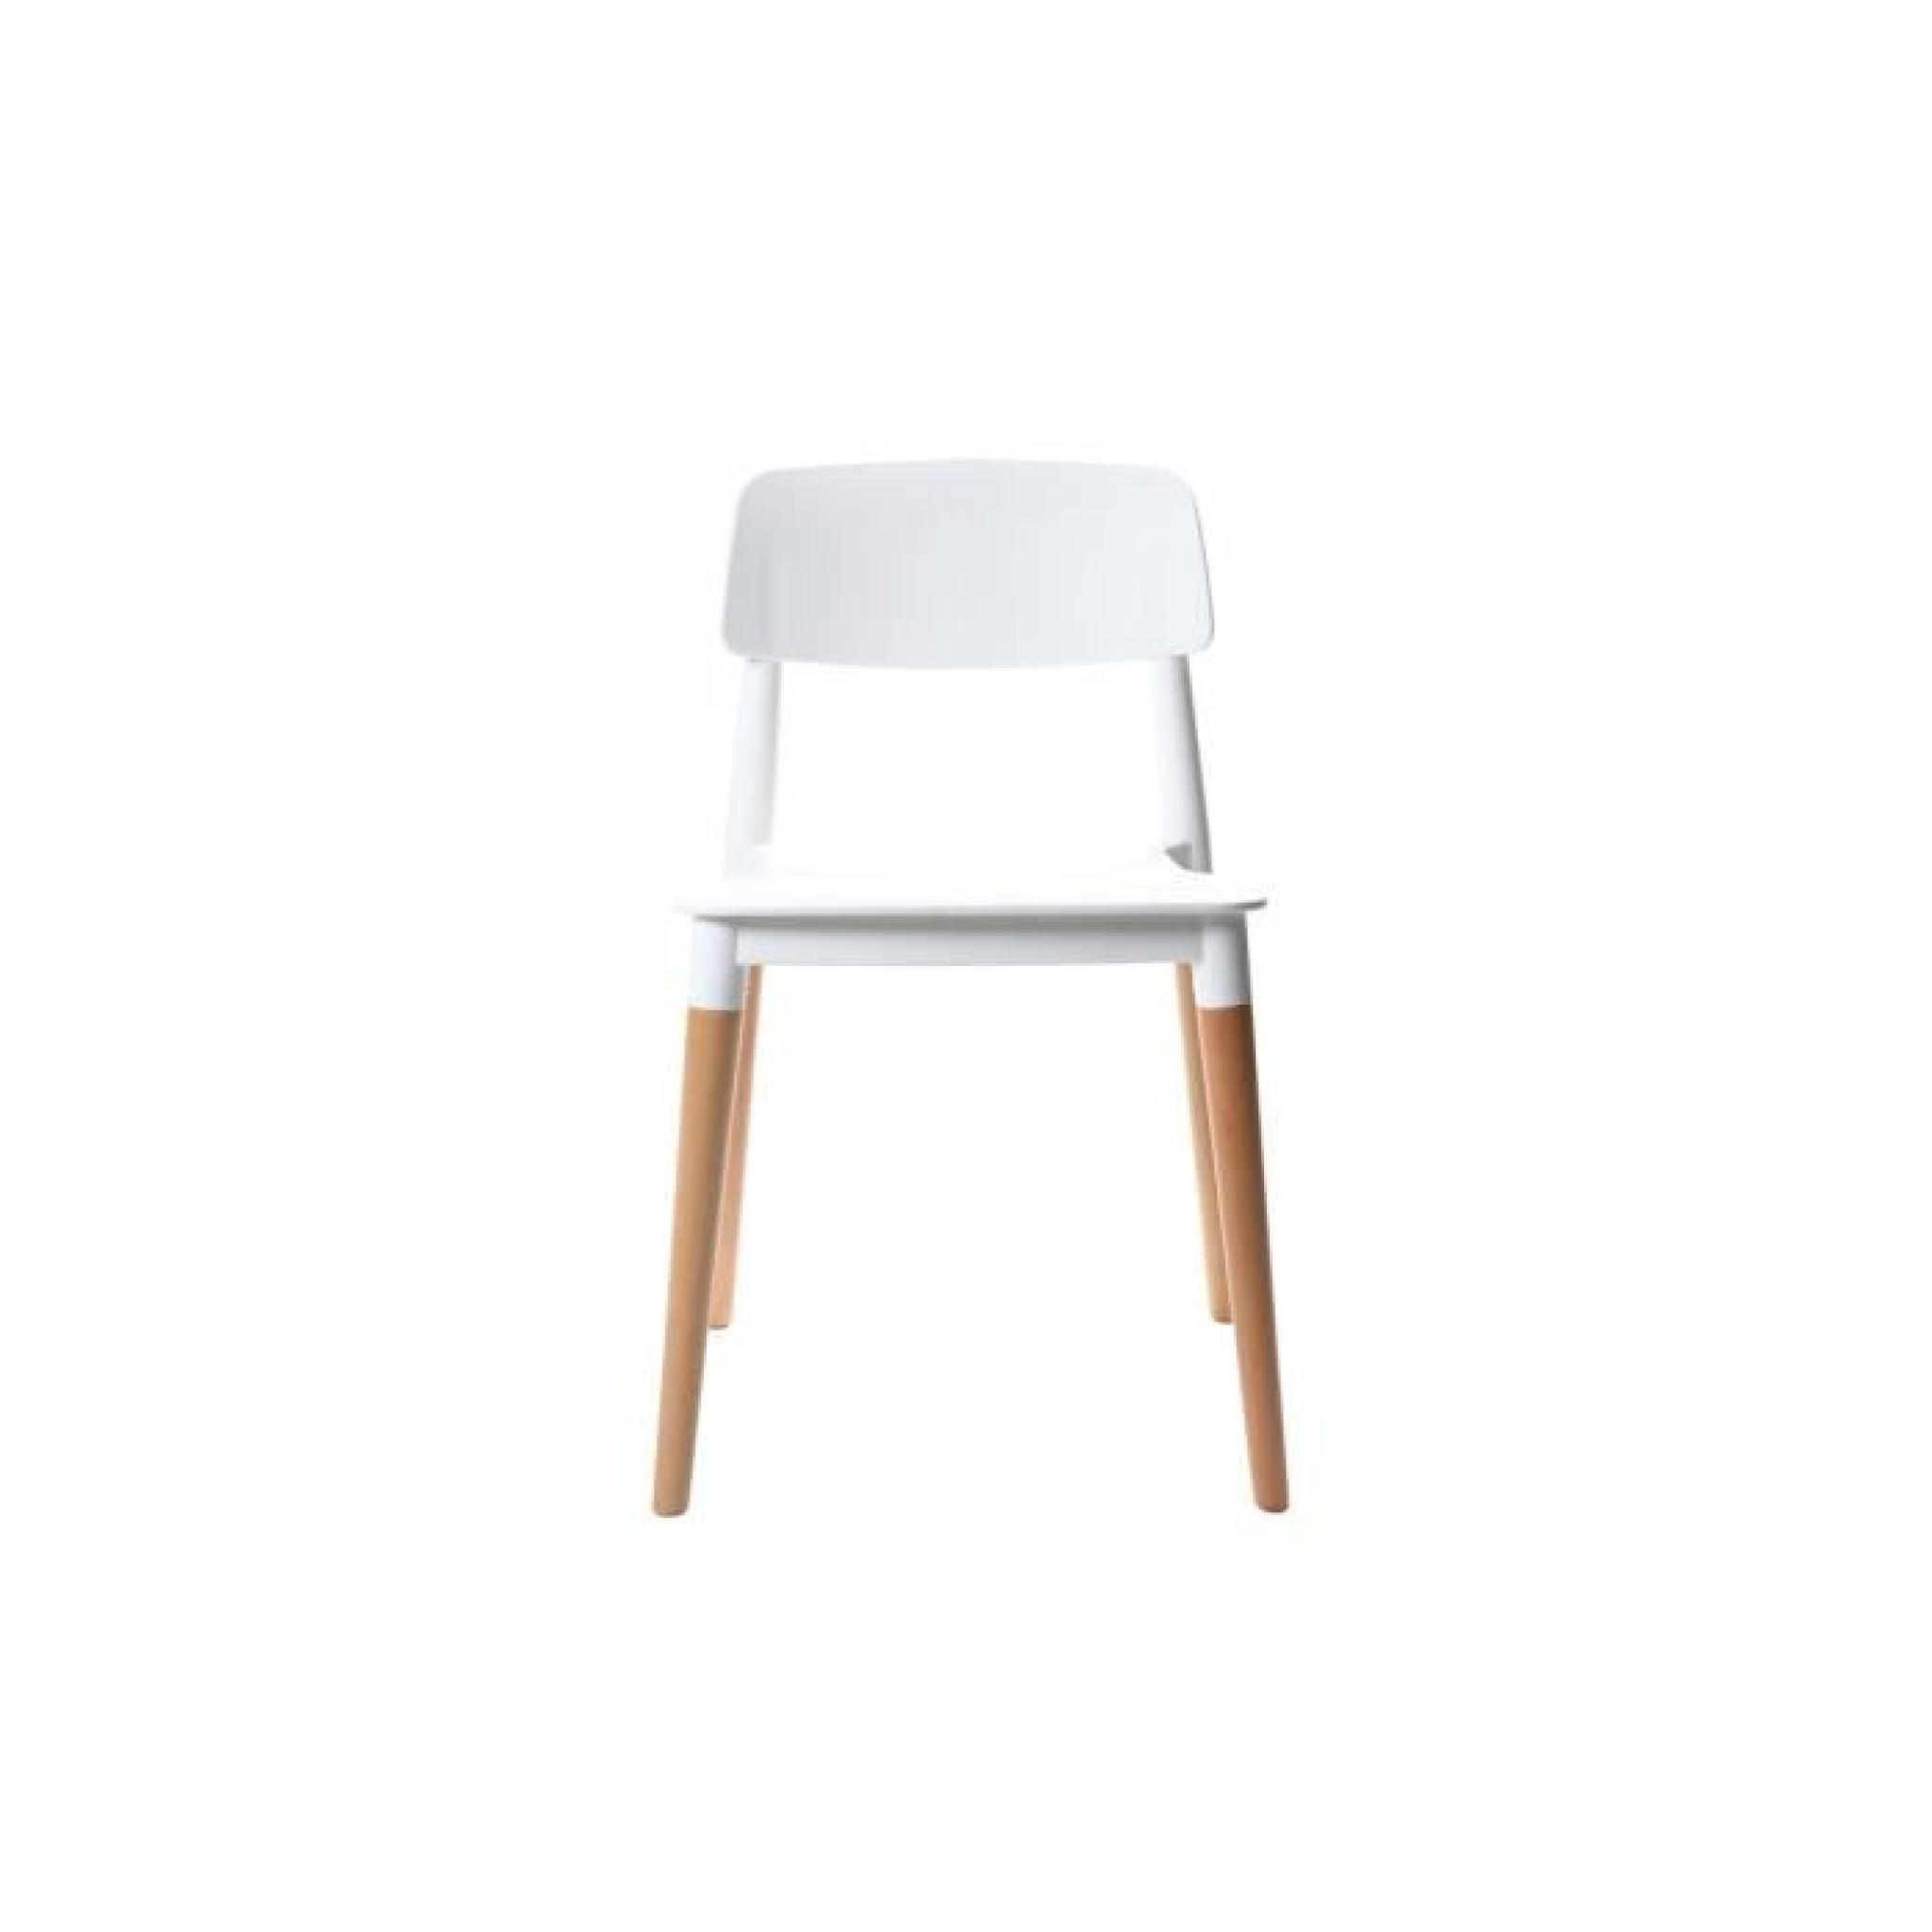 Miliboo - Lot de deux chaises design scandinave… pas cher